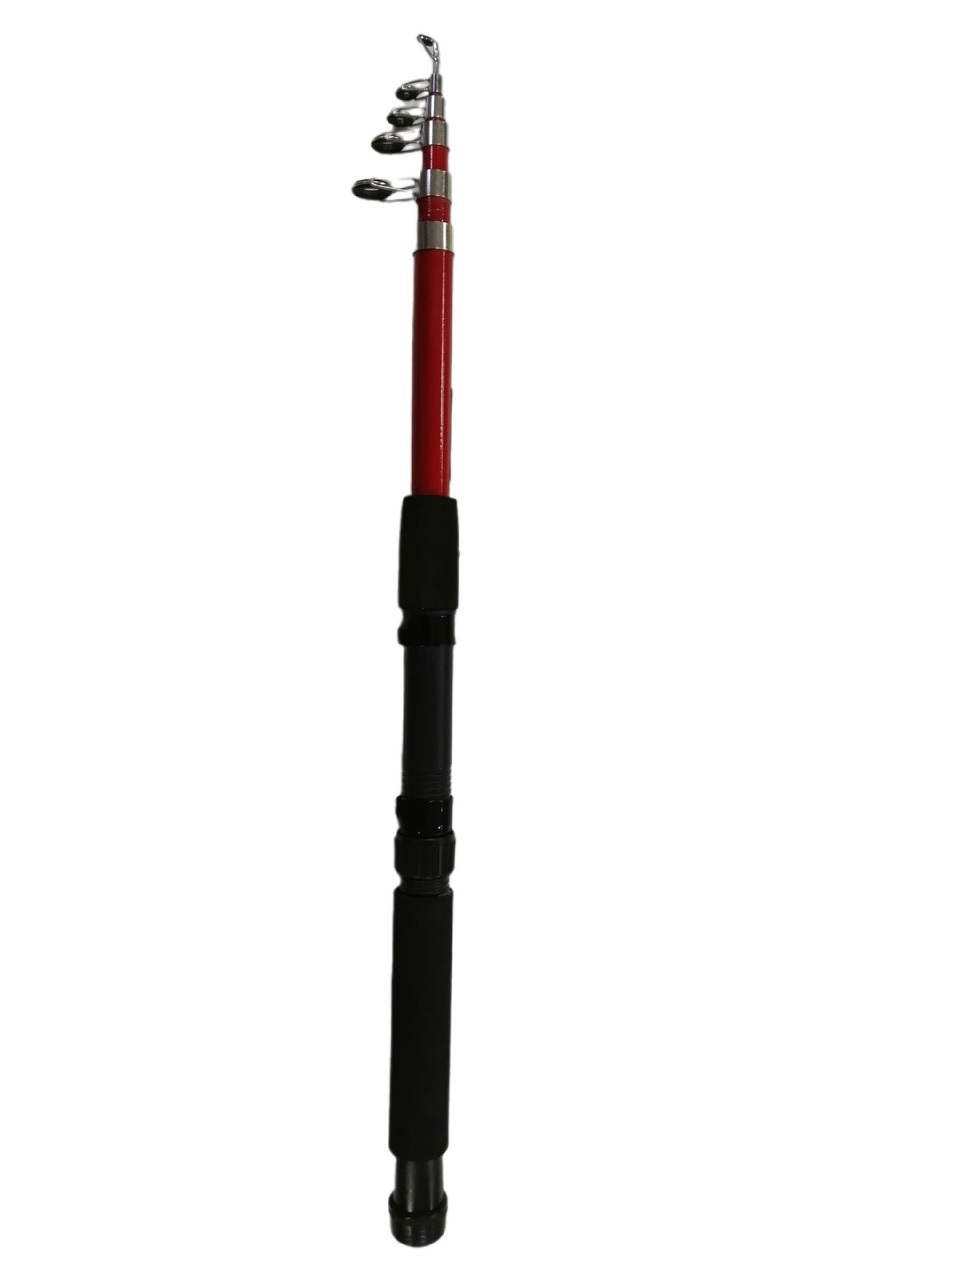 Спиннинг ИРБИТКА телескопический 2,1м. Тест 10-50гр ручка неопрен, стеклопластик Цвет: в ассорт